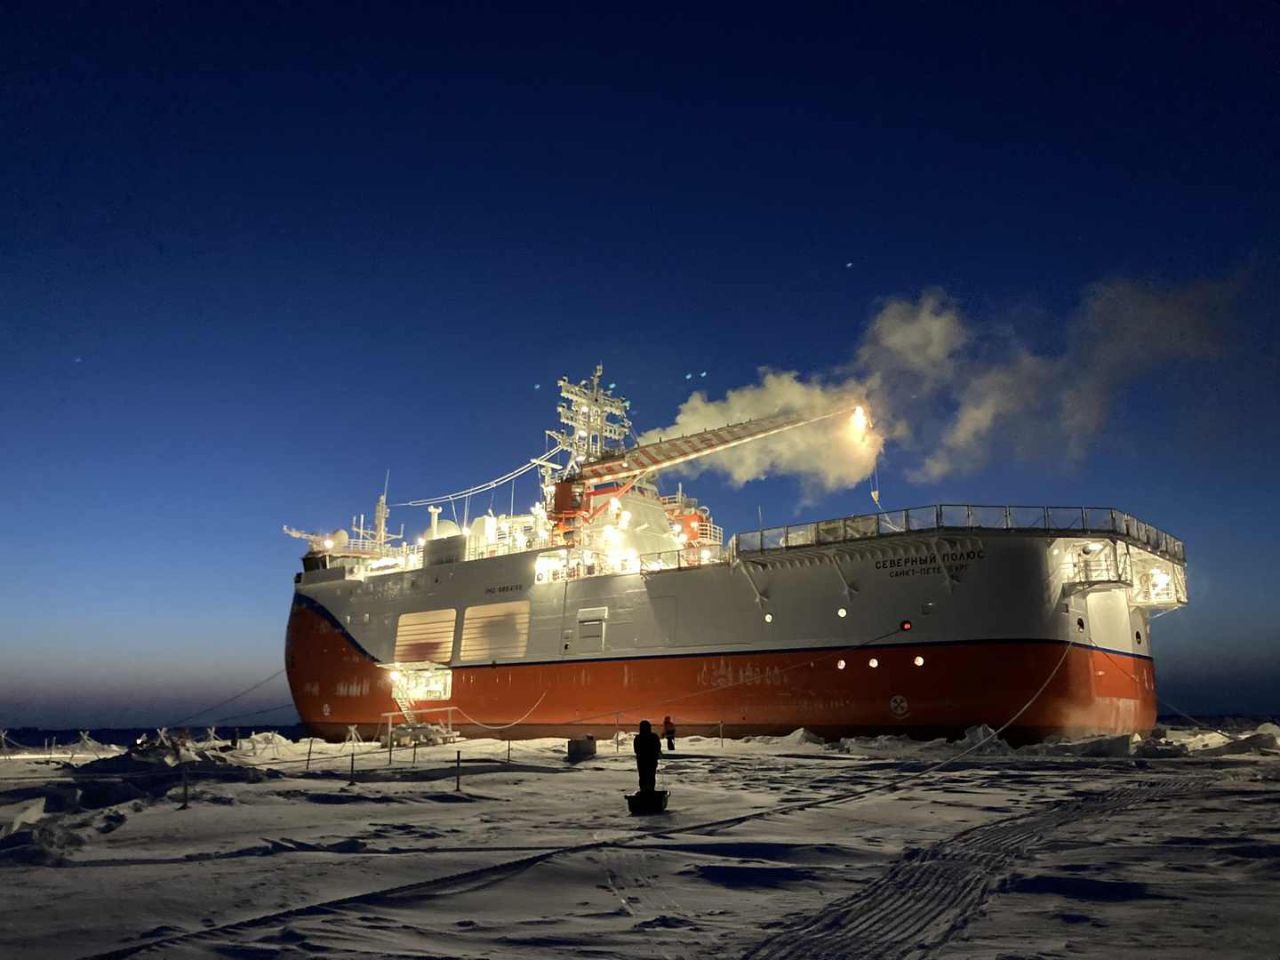 Полярники экспедиции «Северный полюс – 41» изучают приполюсное дно Ледовитого океана